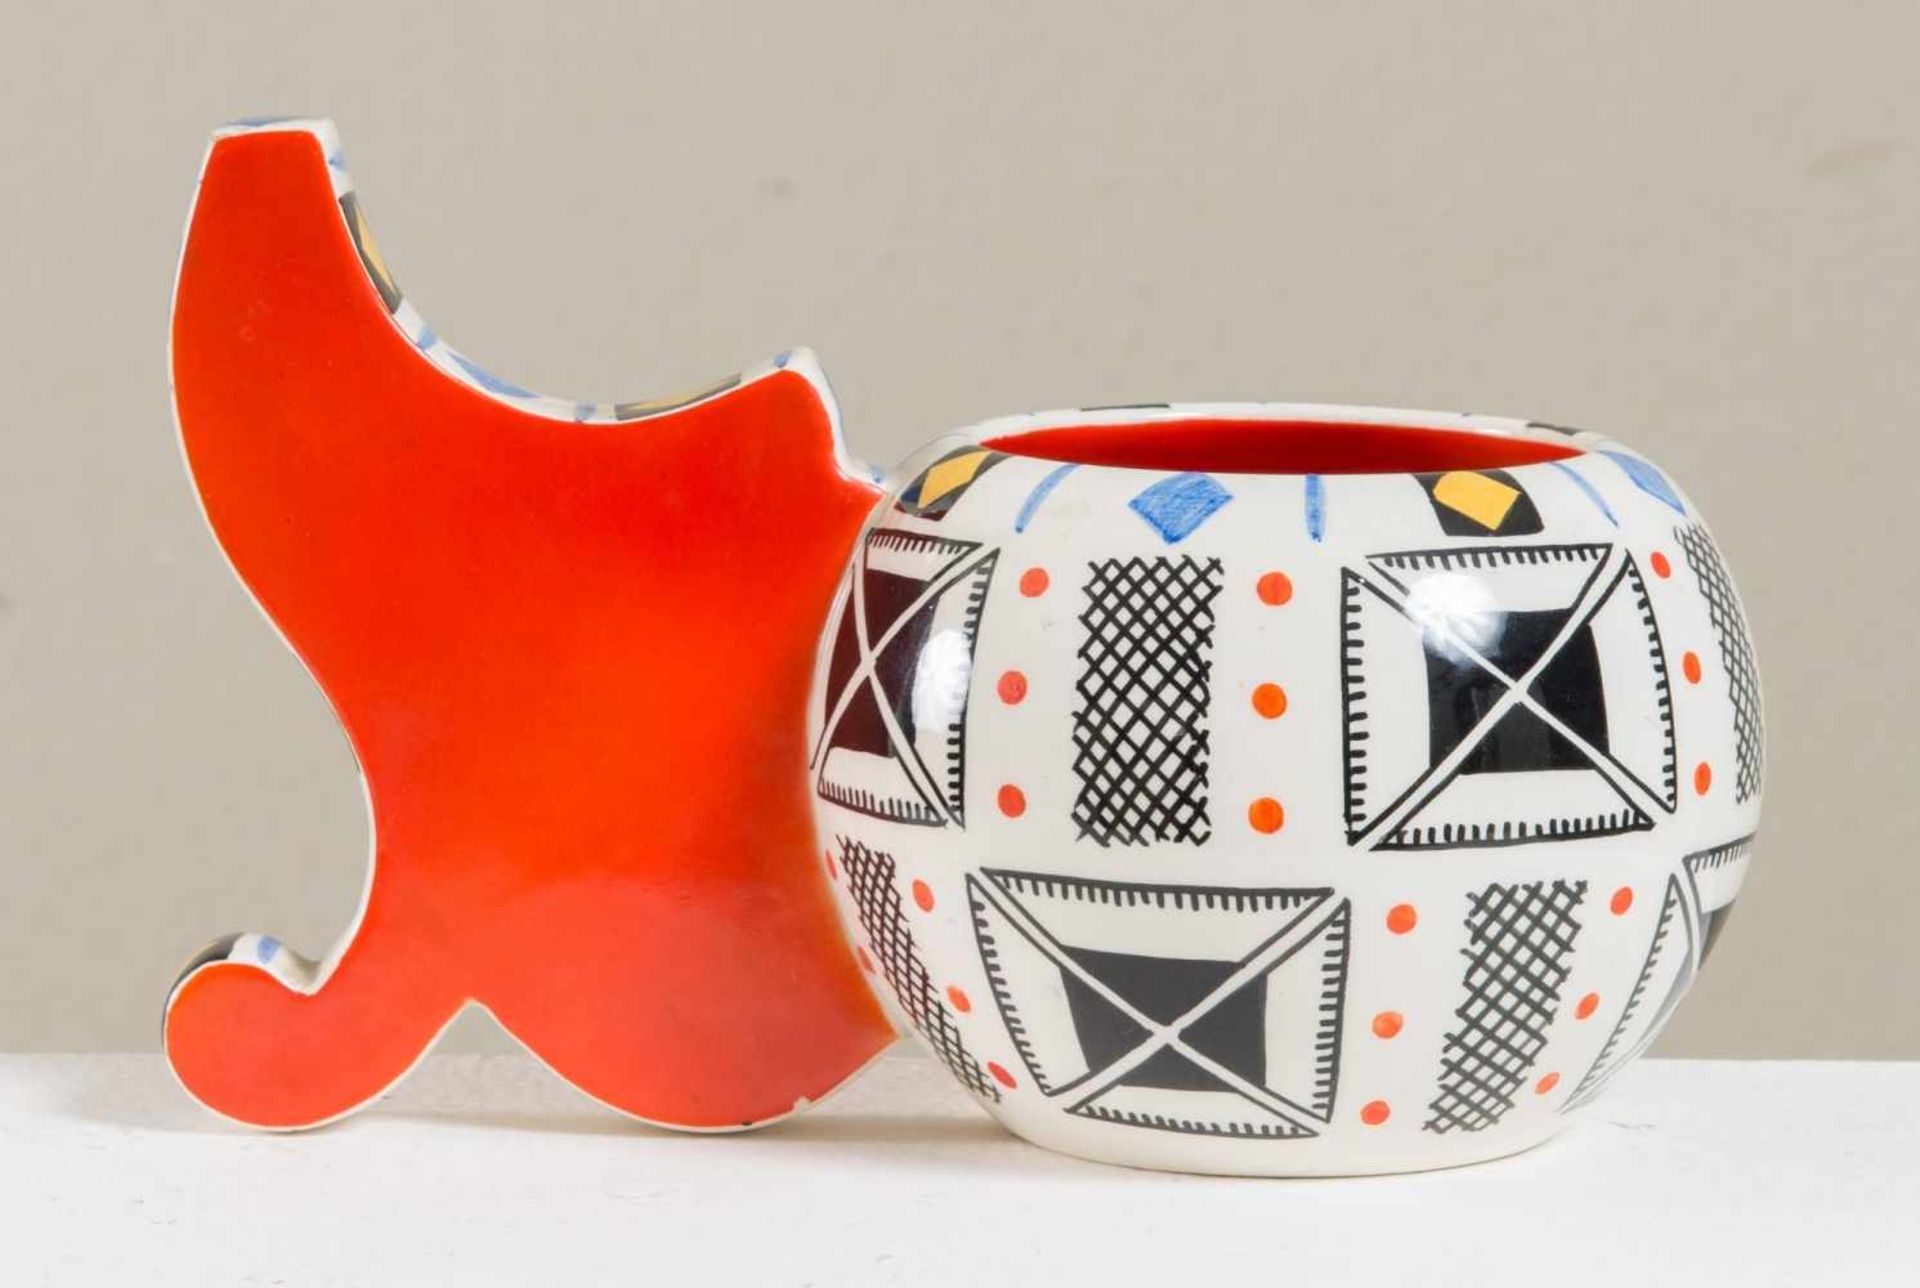 MANIFATTURA LENCI, XX secolo. Vaso in porcellana con manico importante rosso e decorata da motivi - Bild 2 aus 3